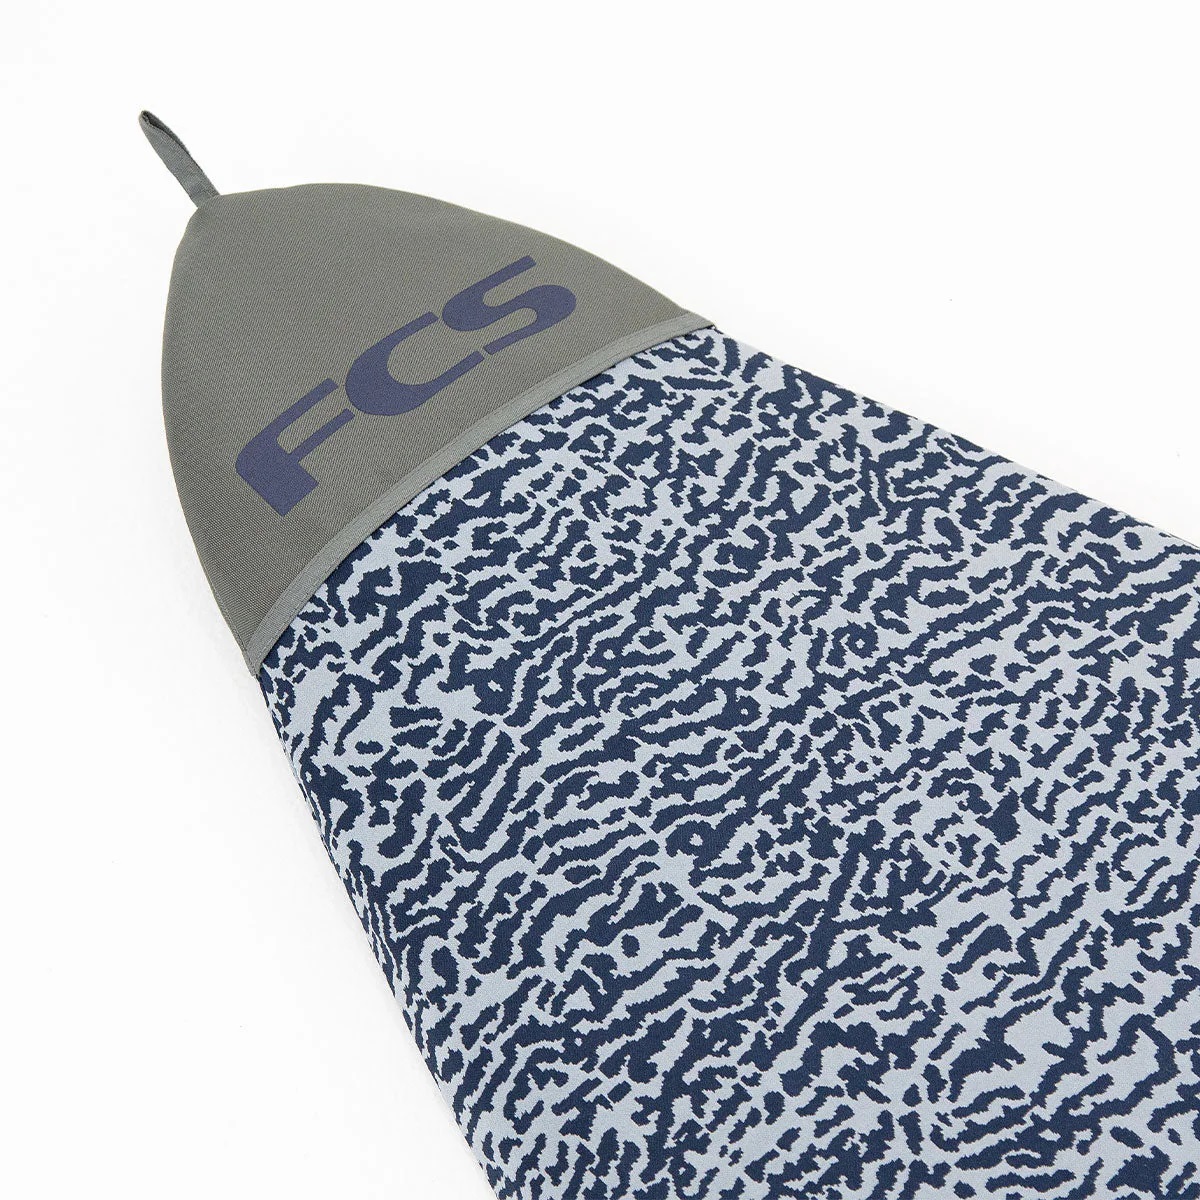 FCS STRETCH FUN BOARD COVER 7'0" カラー2種類 サーフボードケース フィッシュボード ファンボード